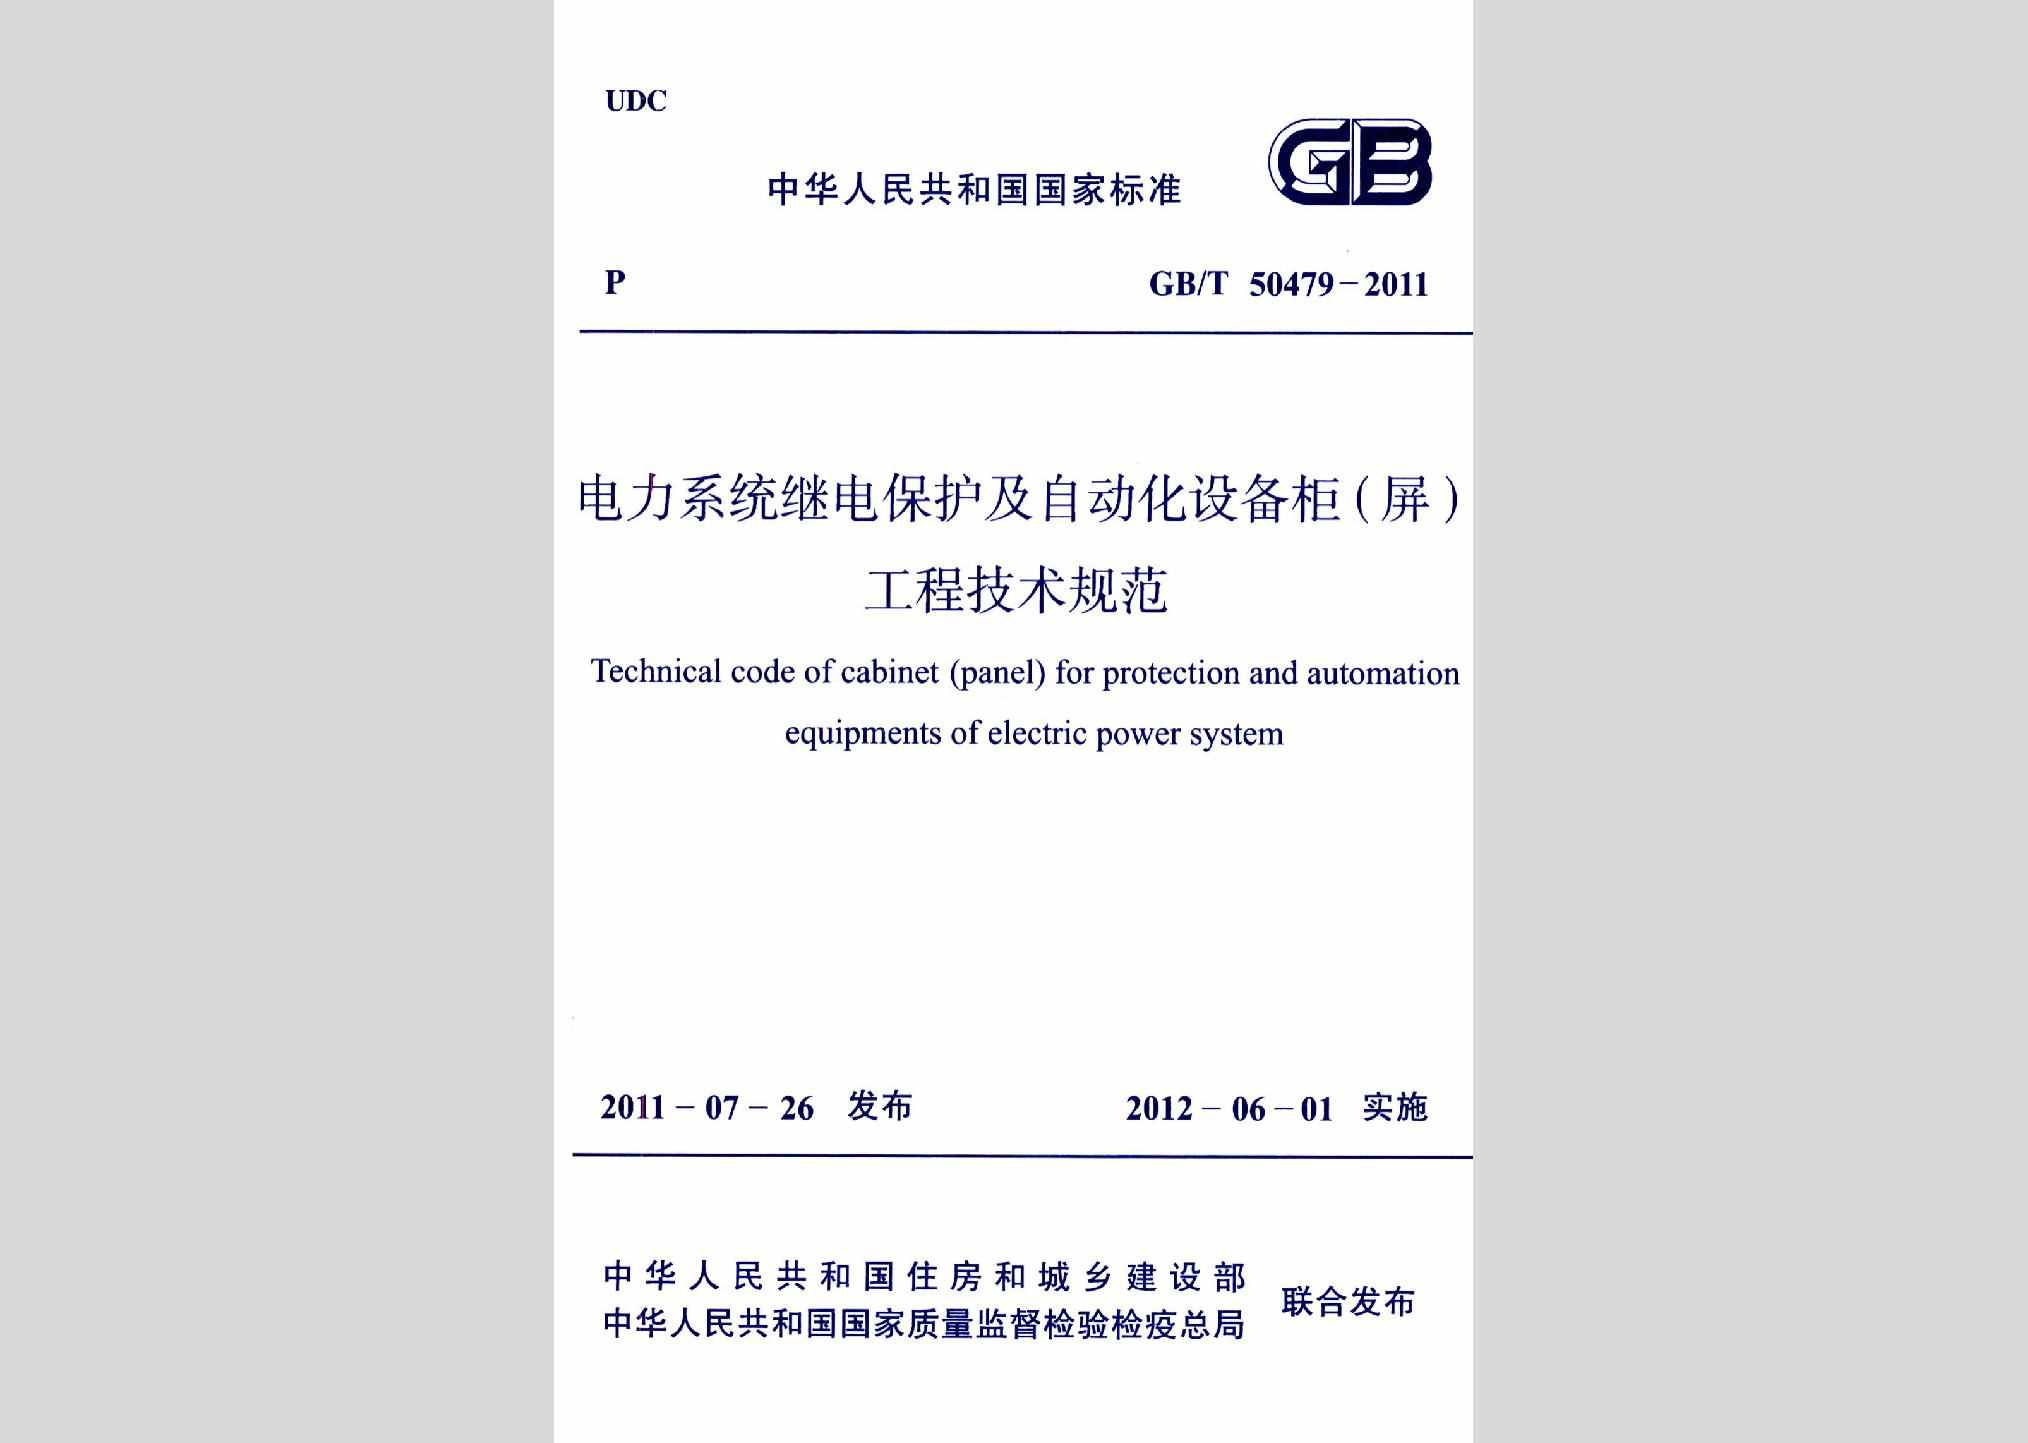 GB/T50479-2011：电力系统继电保护及自动化设备柜(屏)工程技术规范